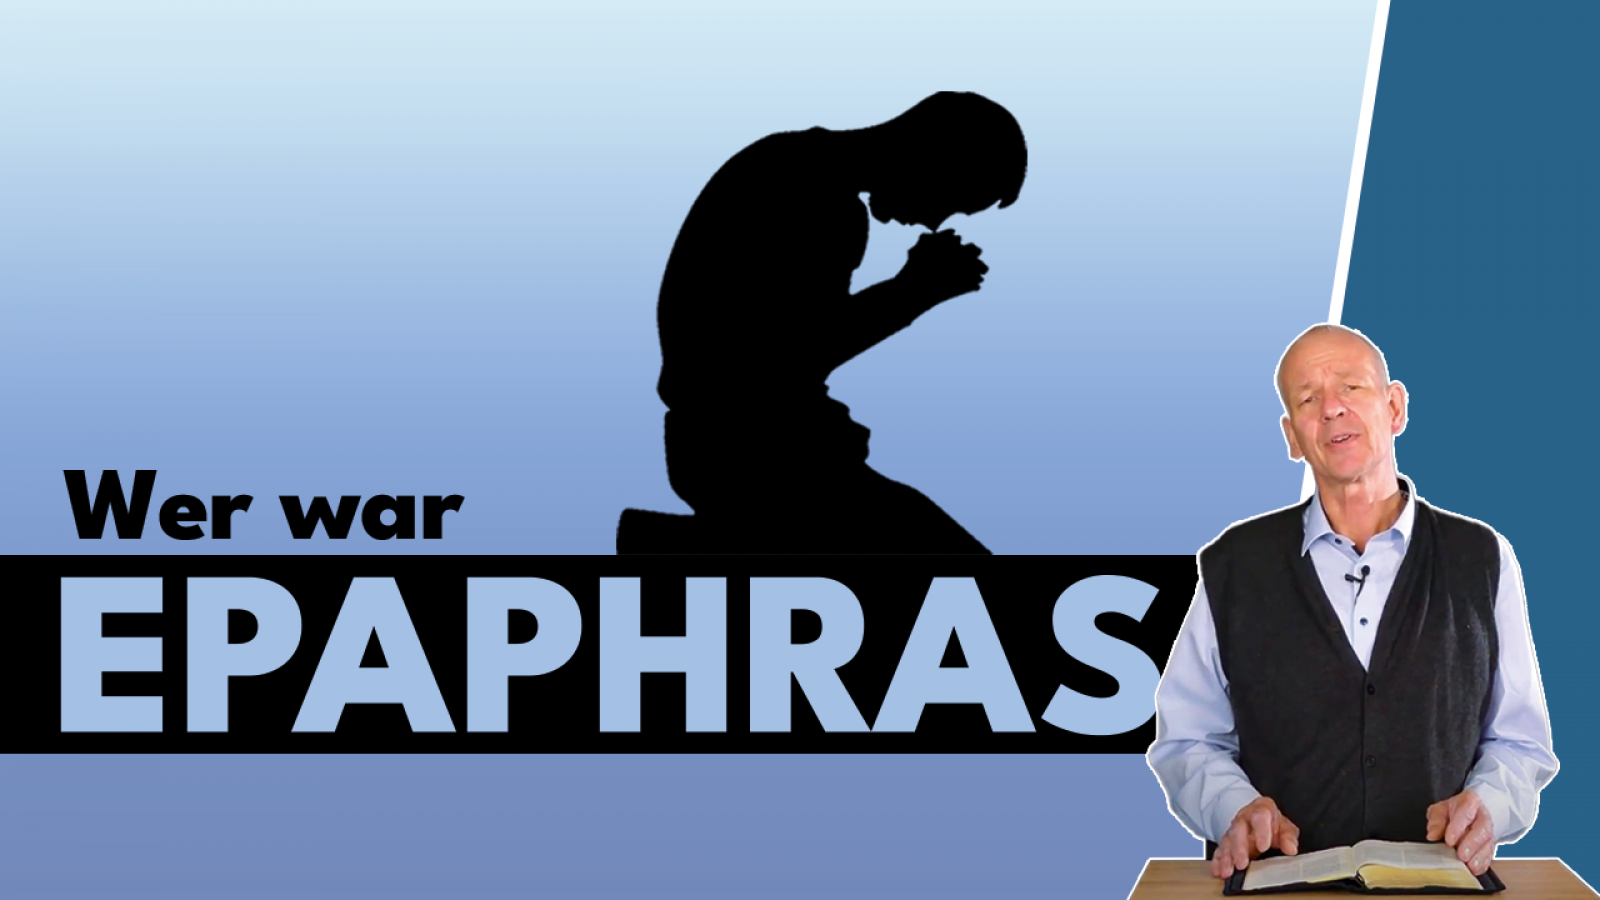 Wer war Epaphras?